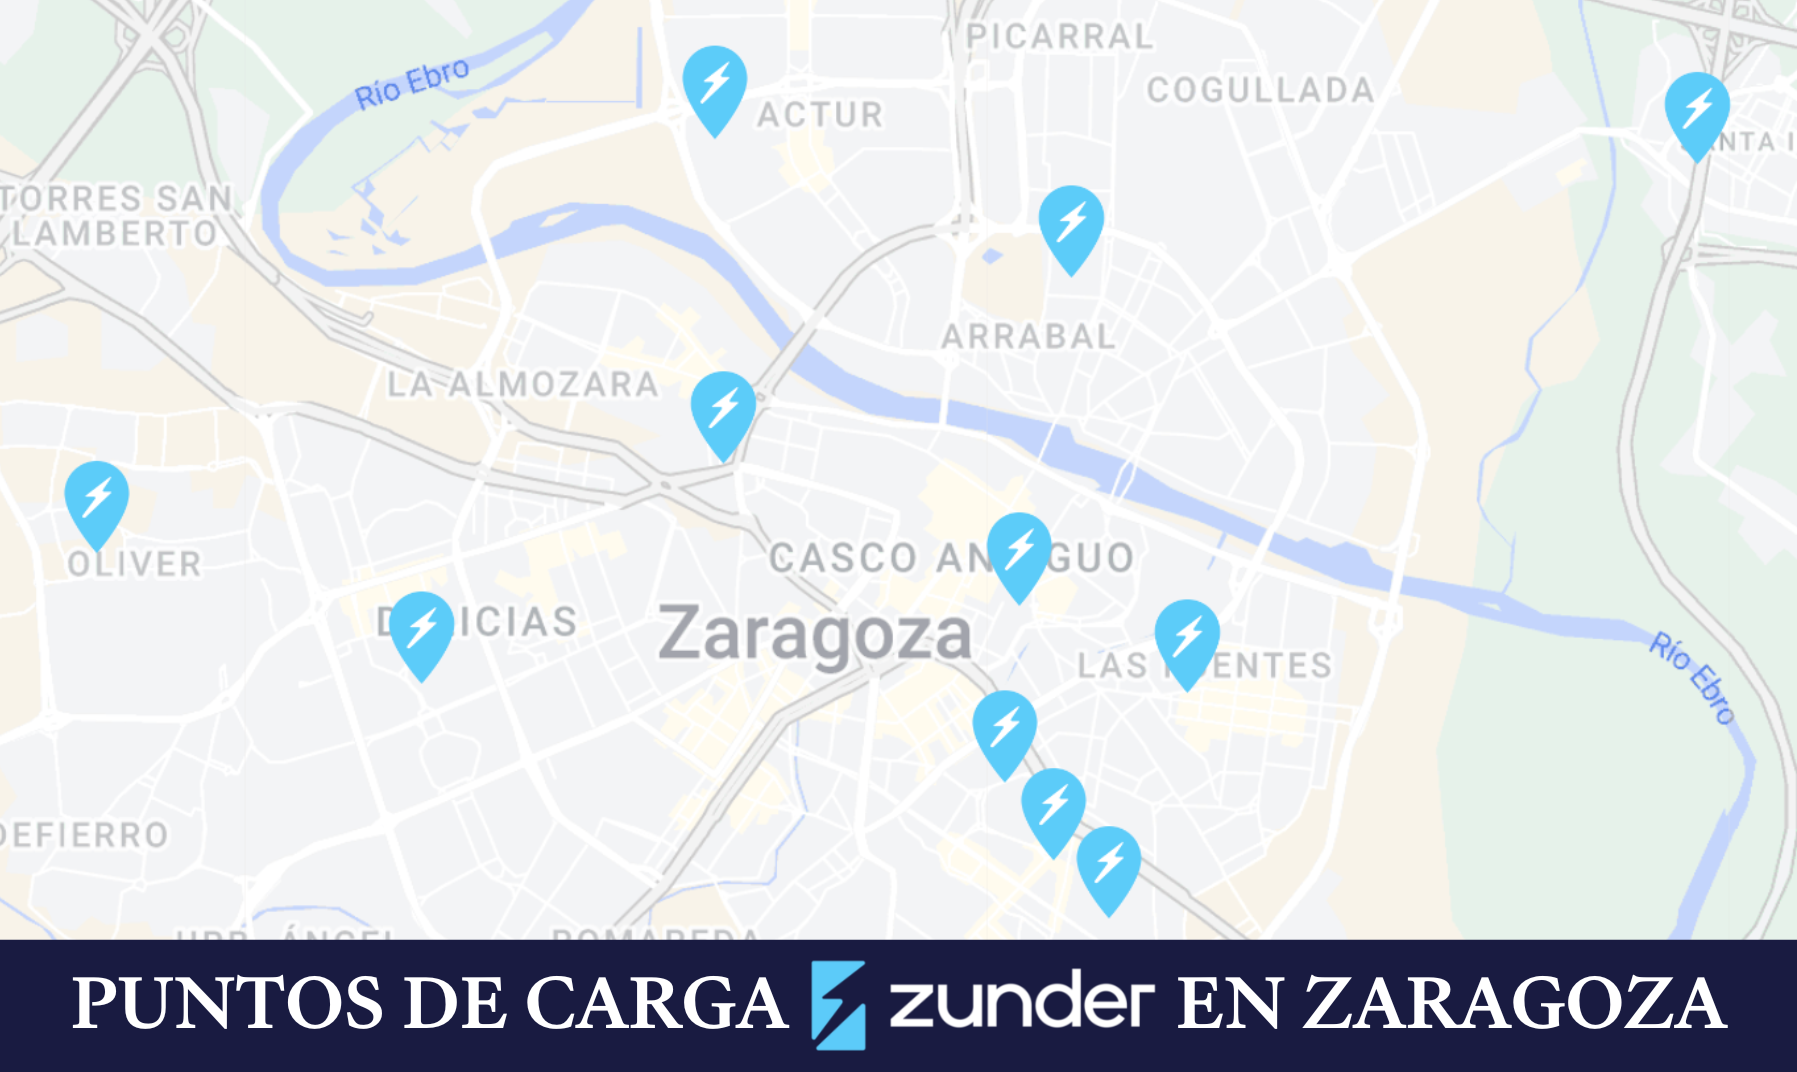 Ubicación de los puntos de carga de Zunder en Zaragoza